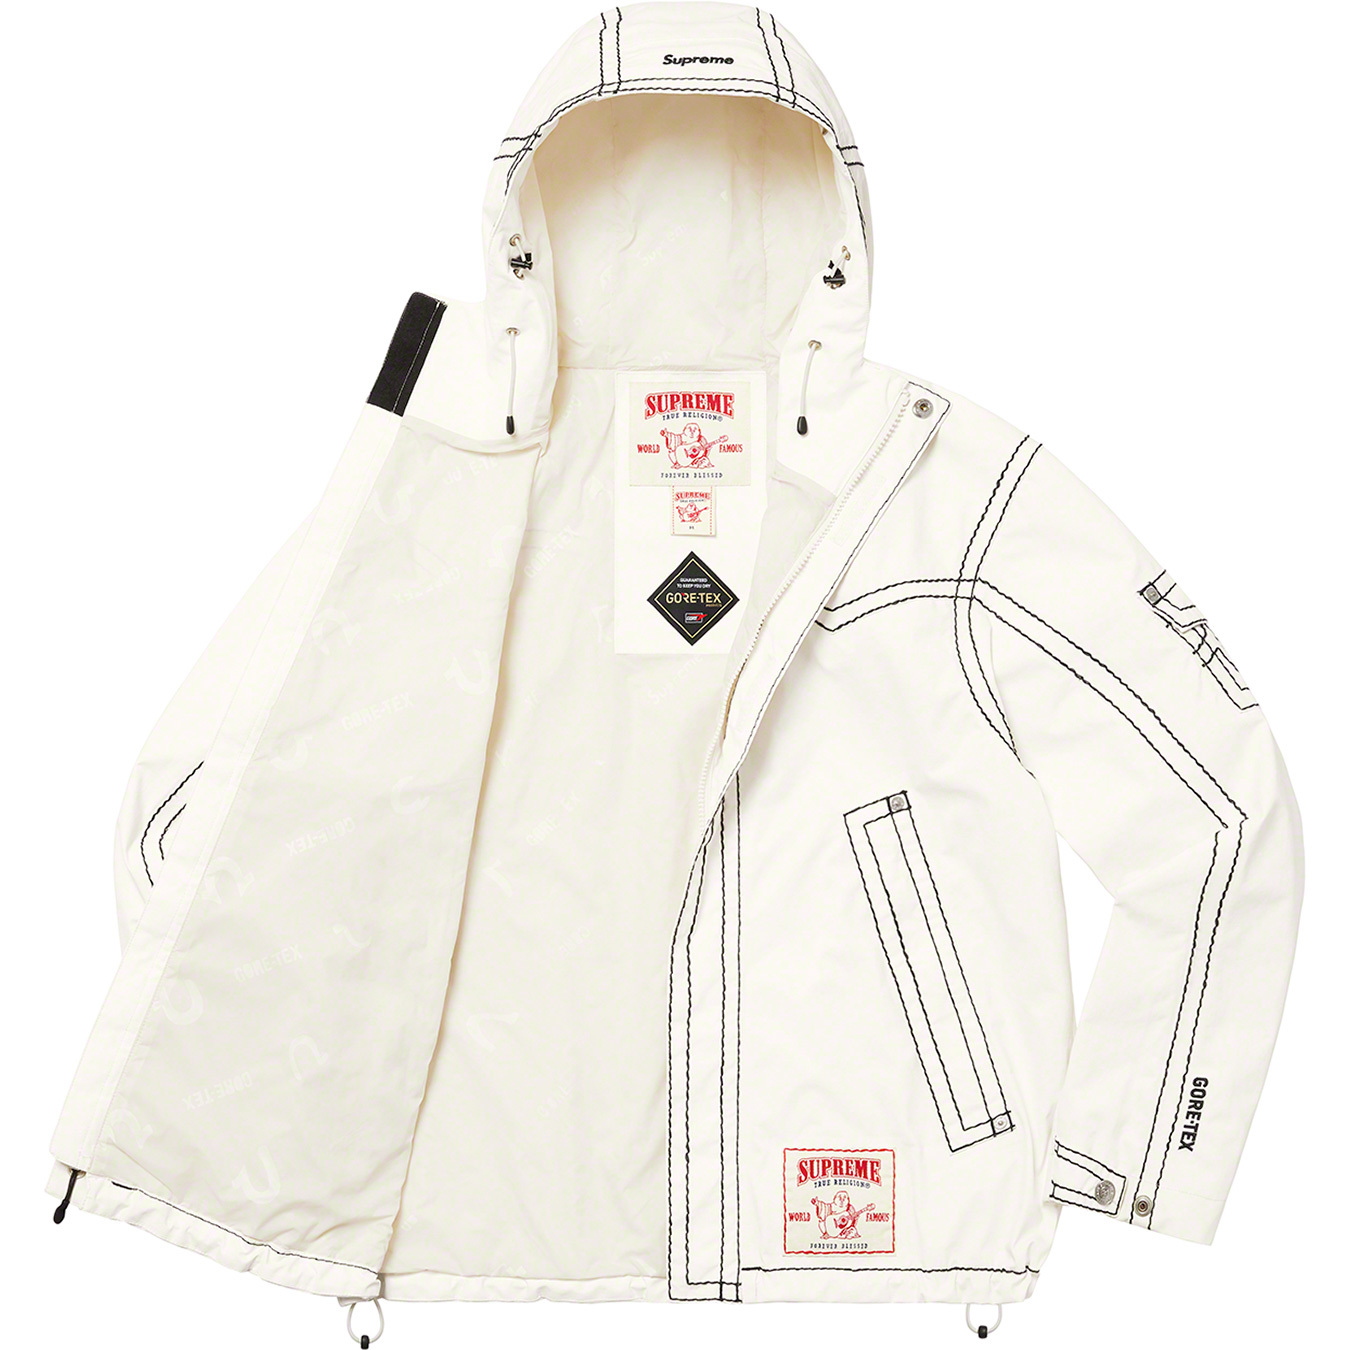 Supreme Supreme®/True Religion® GORE-TEX Shell Jacket